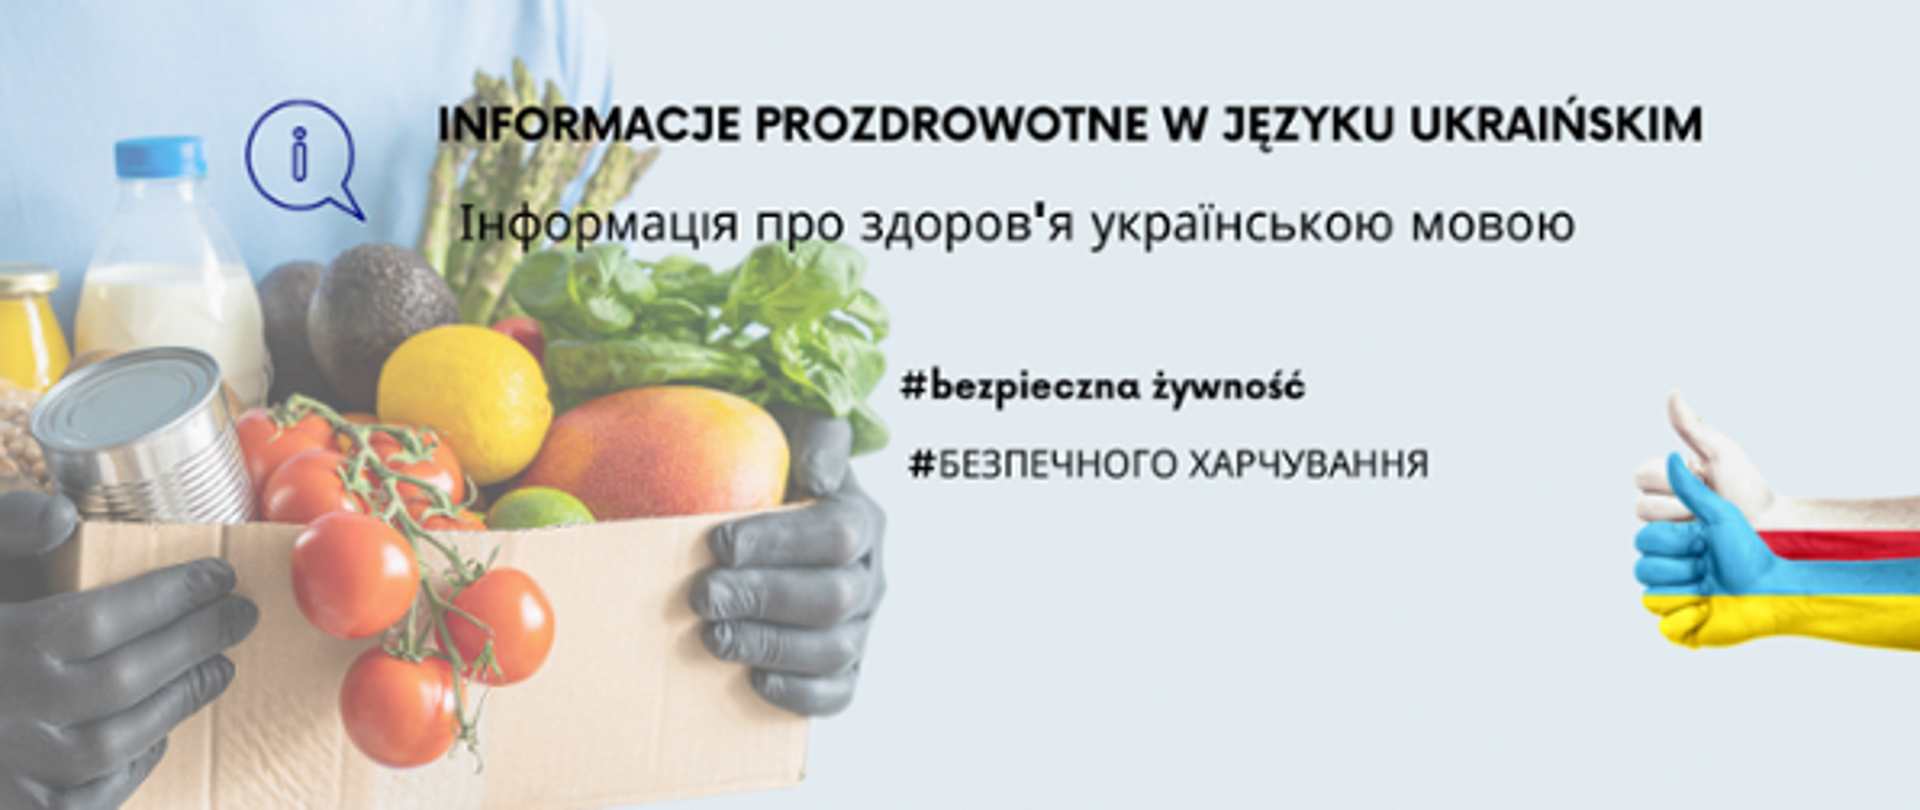 Na zdjęciu znajduje się medyk trzymający karton ze zdrową żywnością. Ponadto widoczny jest napis: INFORMACJE PROZDROWOTNE W JĘZYKU UKRAIŃSKIM oraz #bezpieczna żywność. Napisy widnieją w języku polskim oraz ukraińskim.